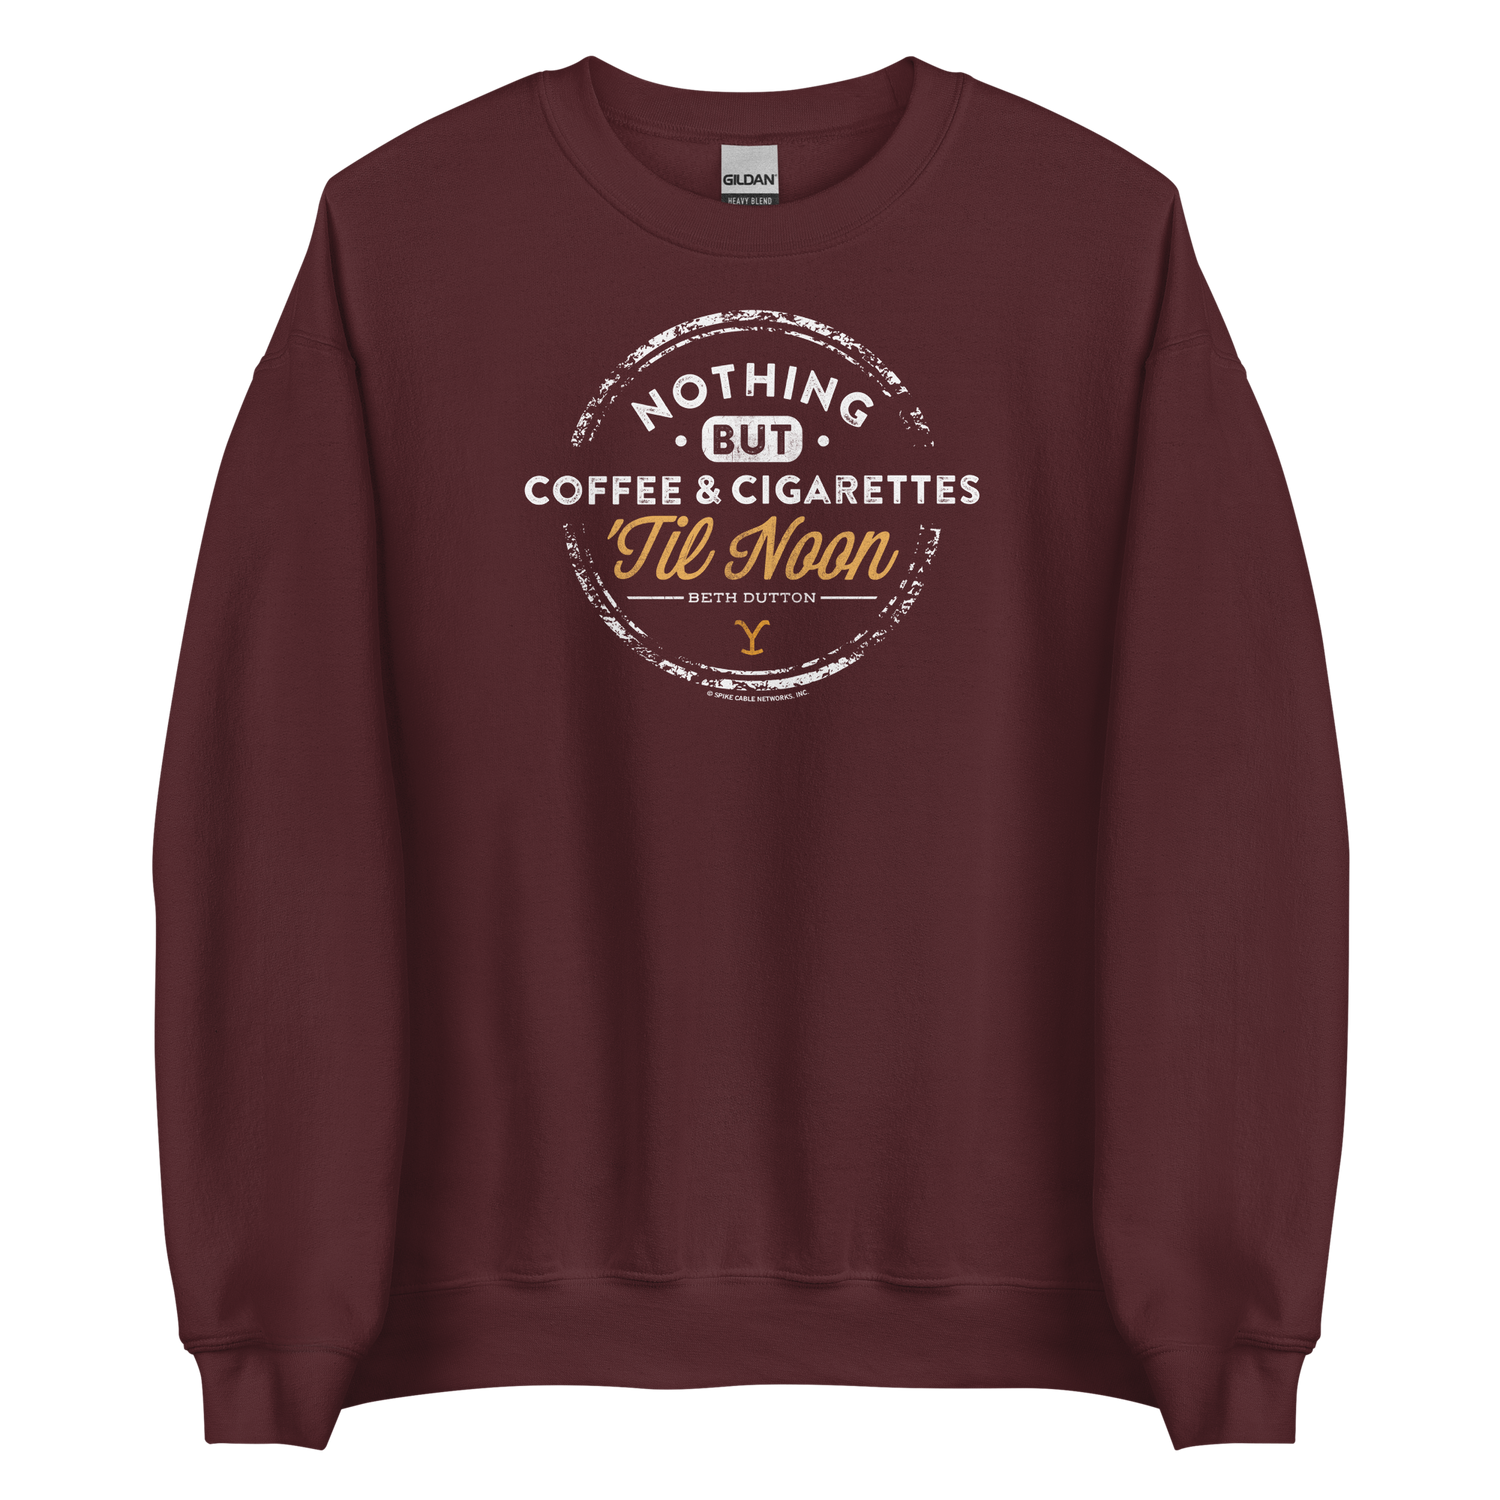 Yellowstone Nothing But Coffee & Cigarettes 'Til Noon Fleece Crewneck Sweatshirt